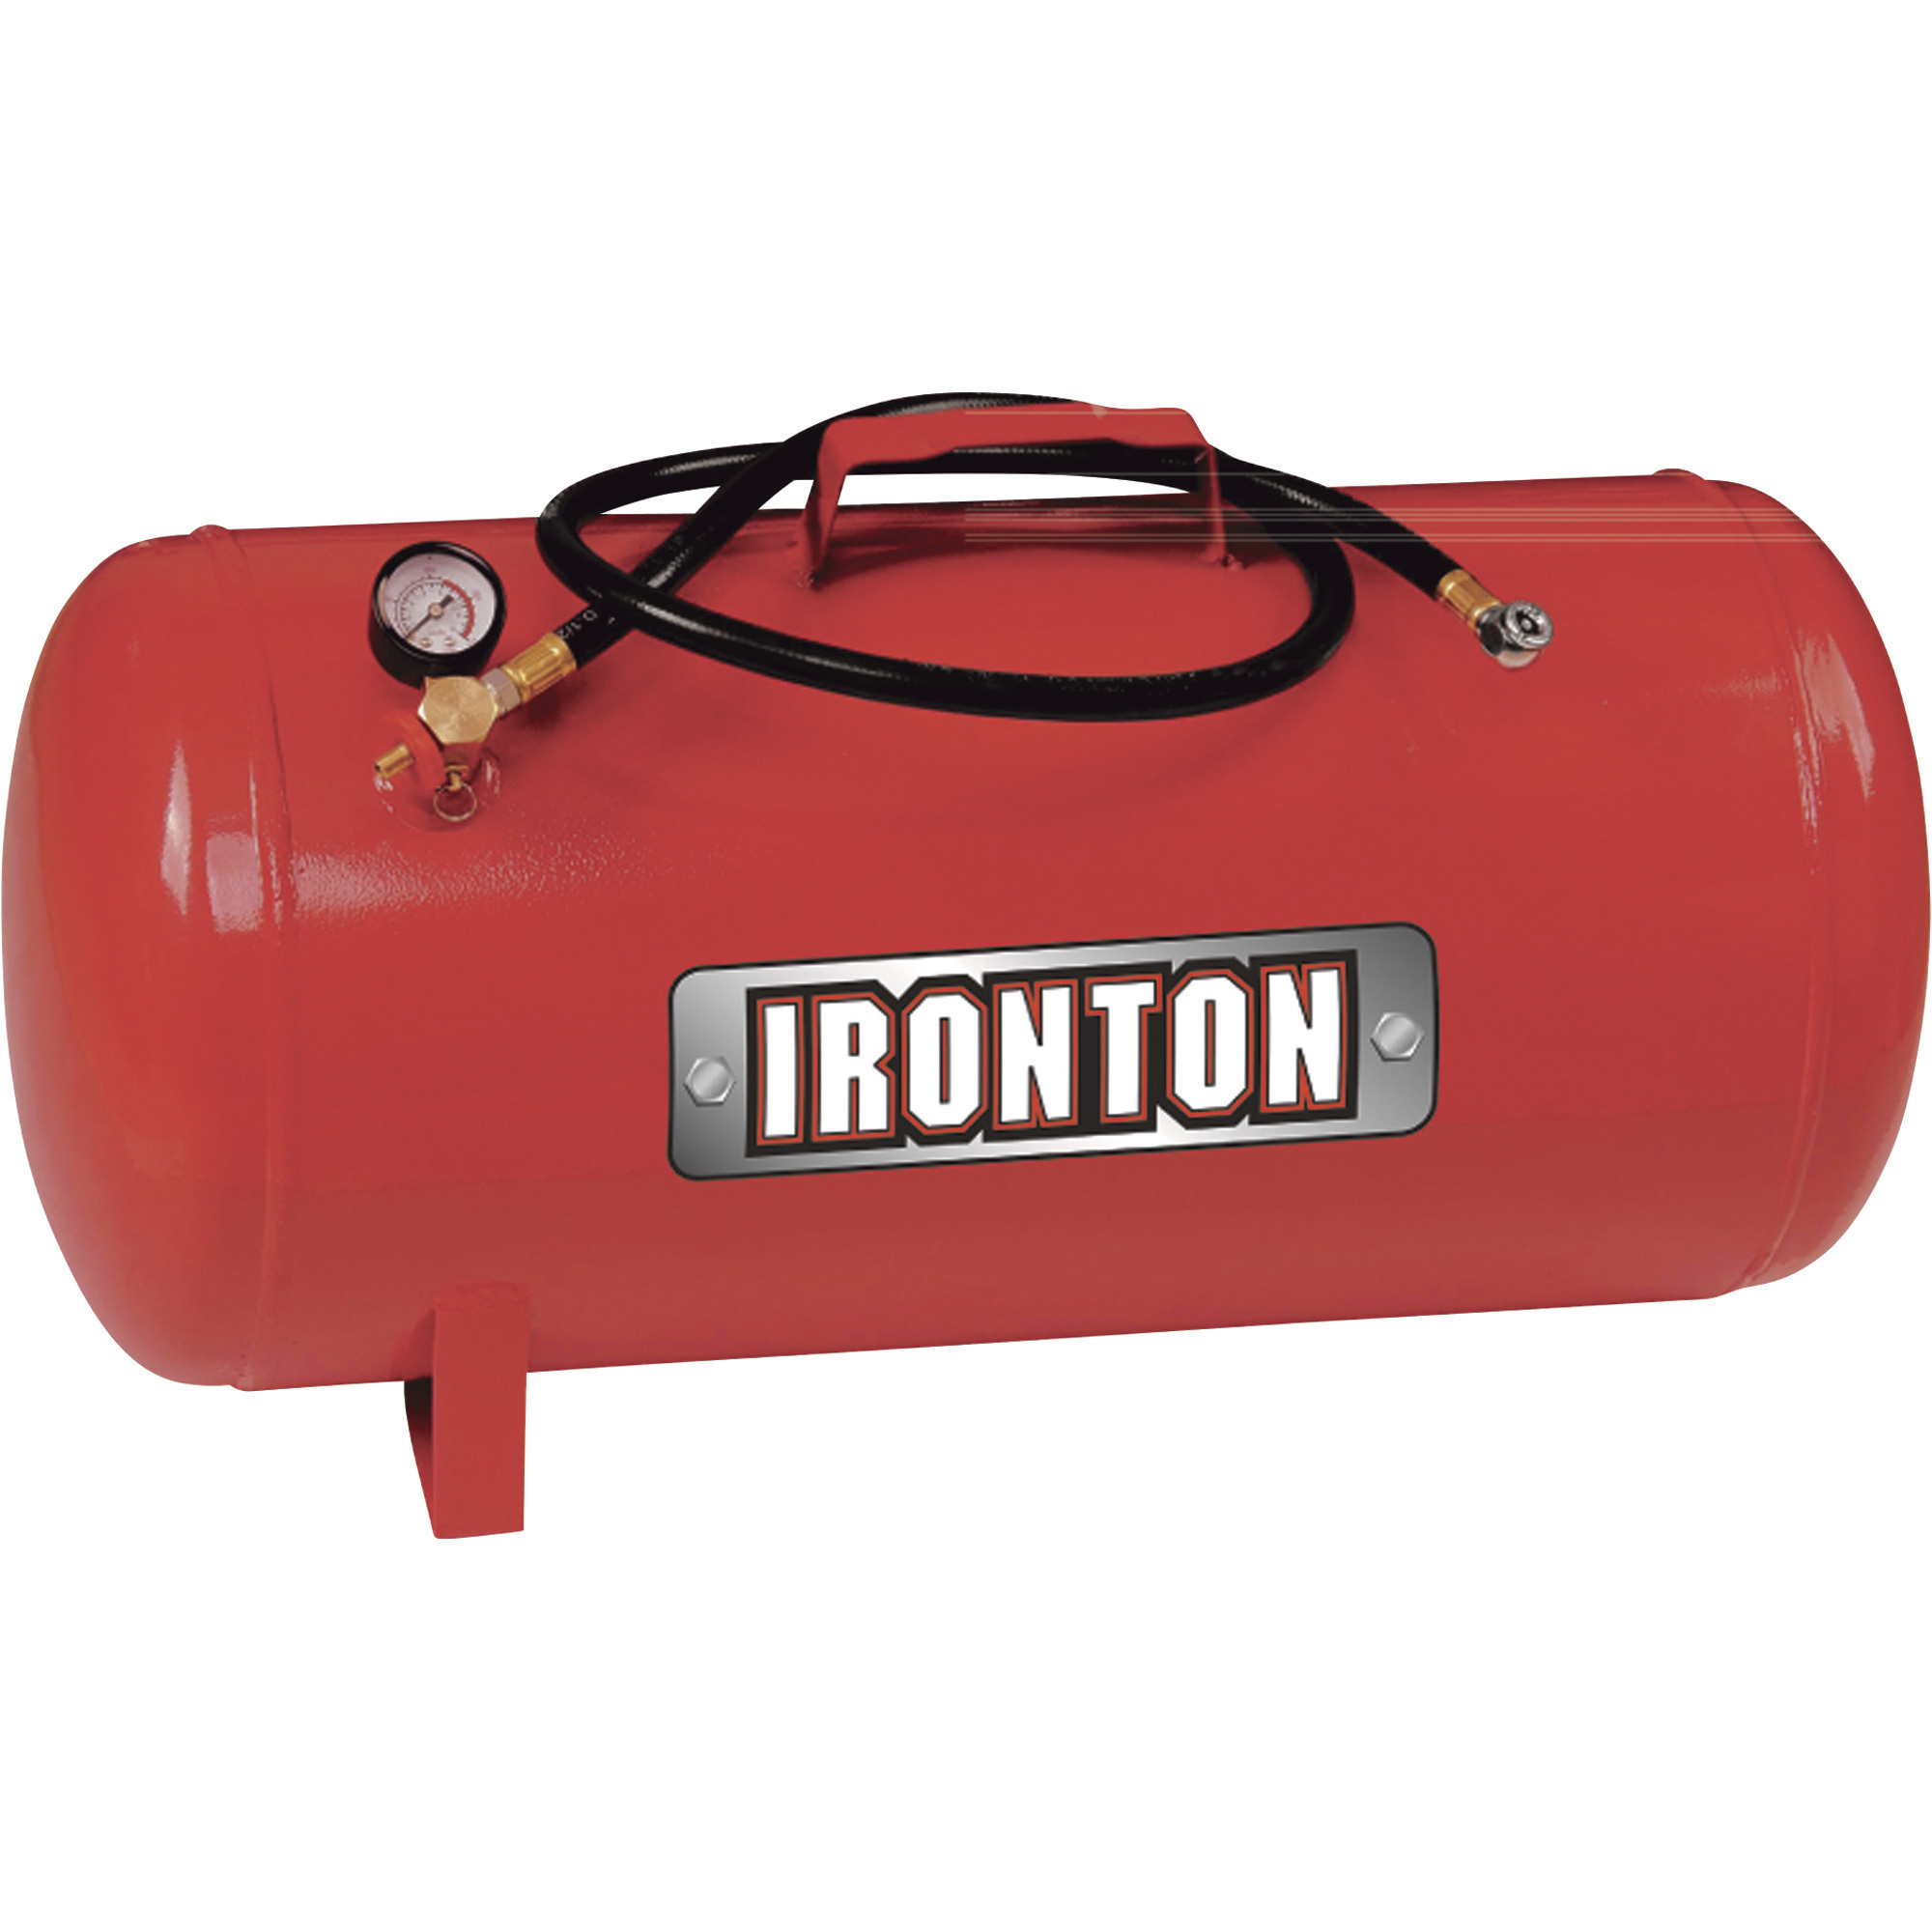 Ironton 10-Gallon Portable Air Carry Tank